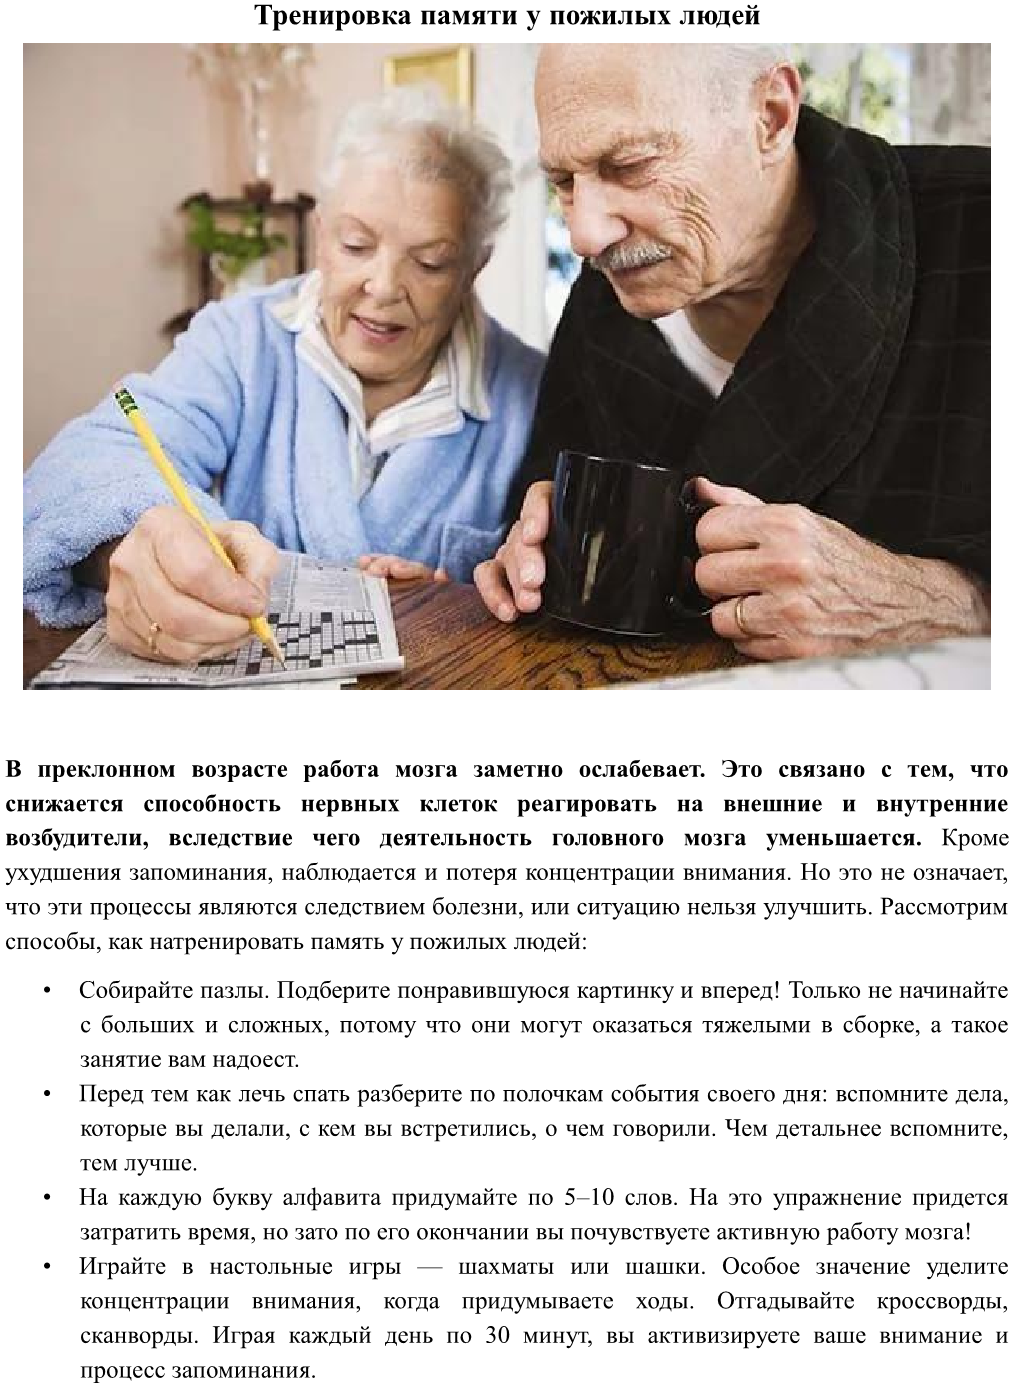 Гимнастика для памяти пожилым. Рекомендации развития памяти у пожилых. Внимание у пожилых людей. Тренировка мозга для пожилых людей. Упражнения на сохранение памяти у пожилых людей.